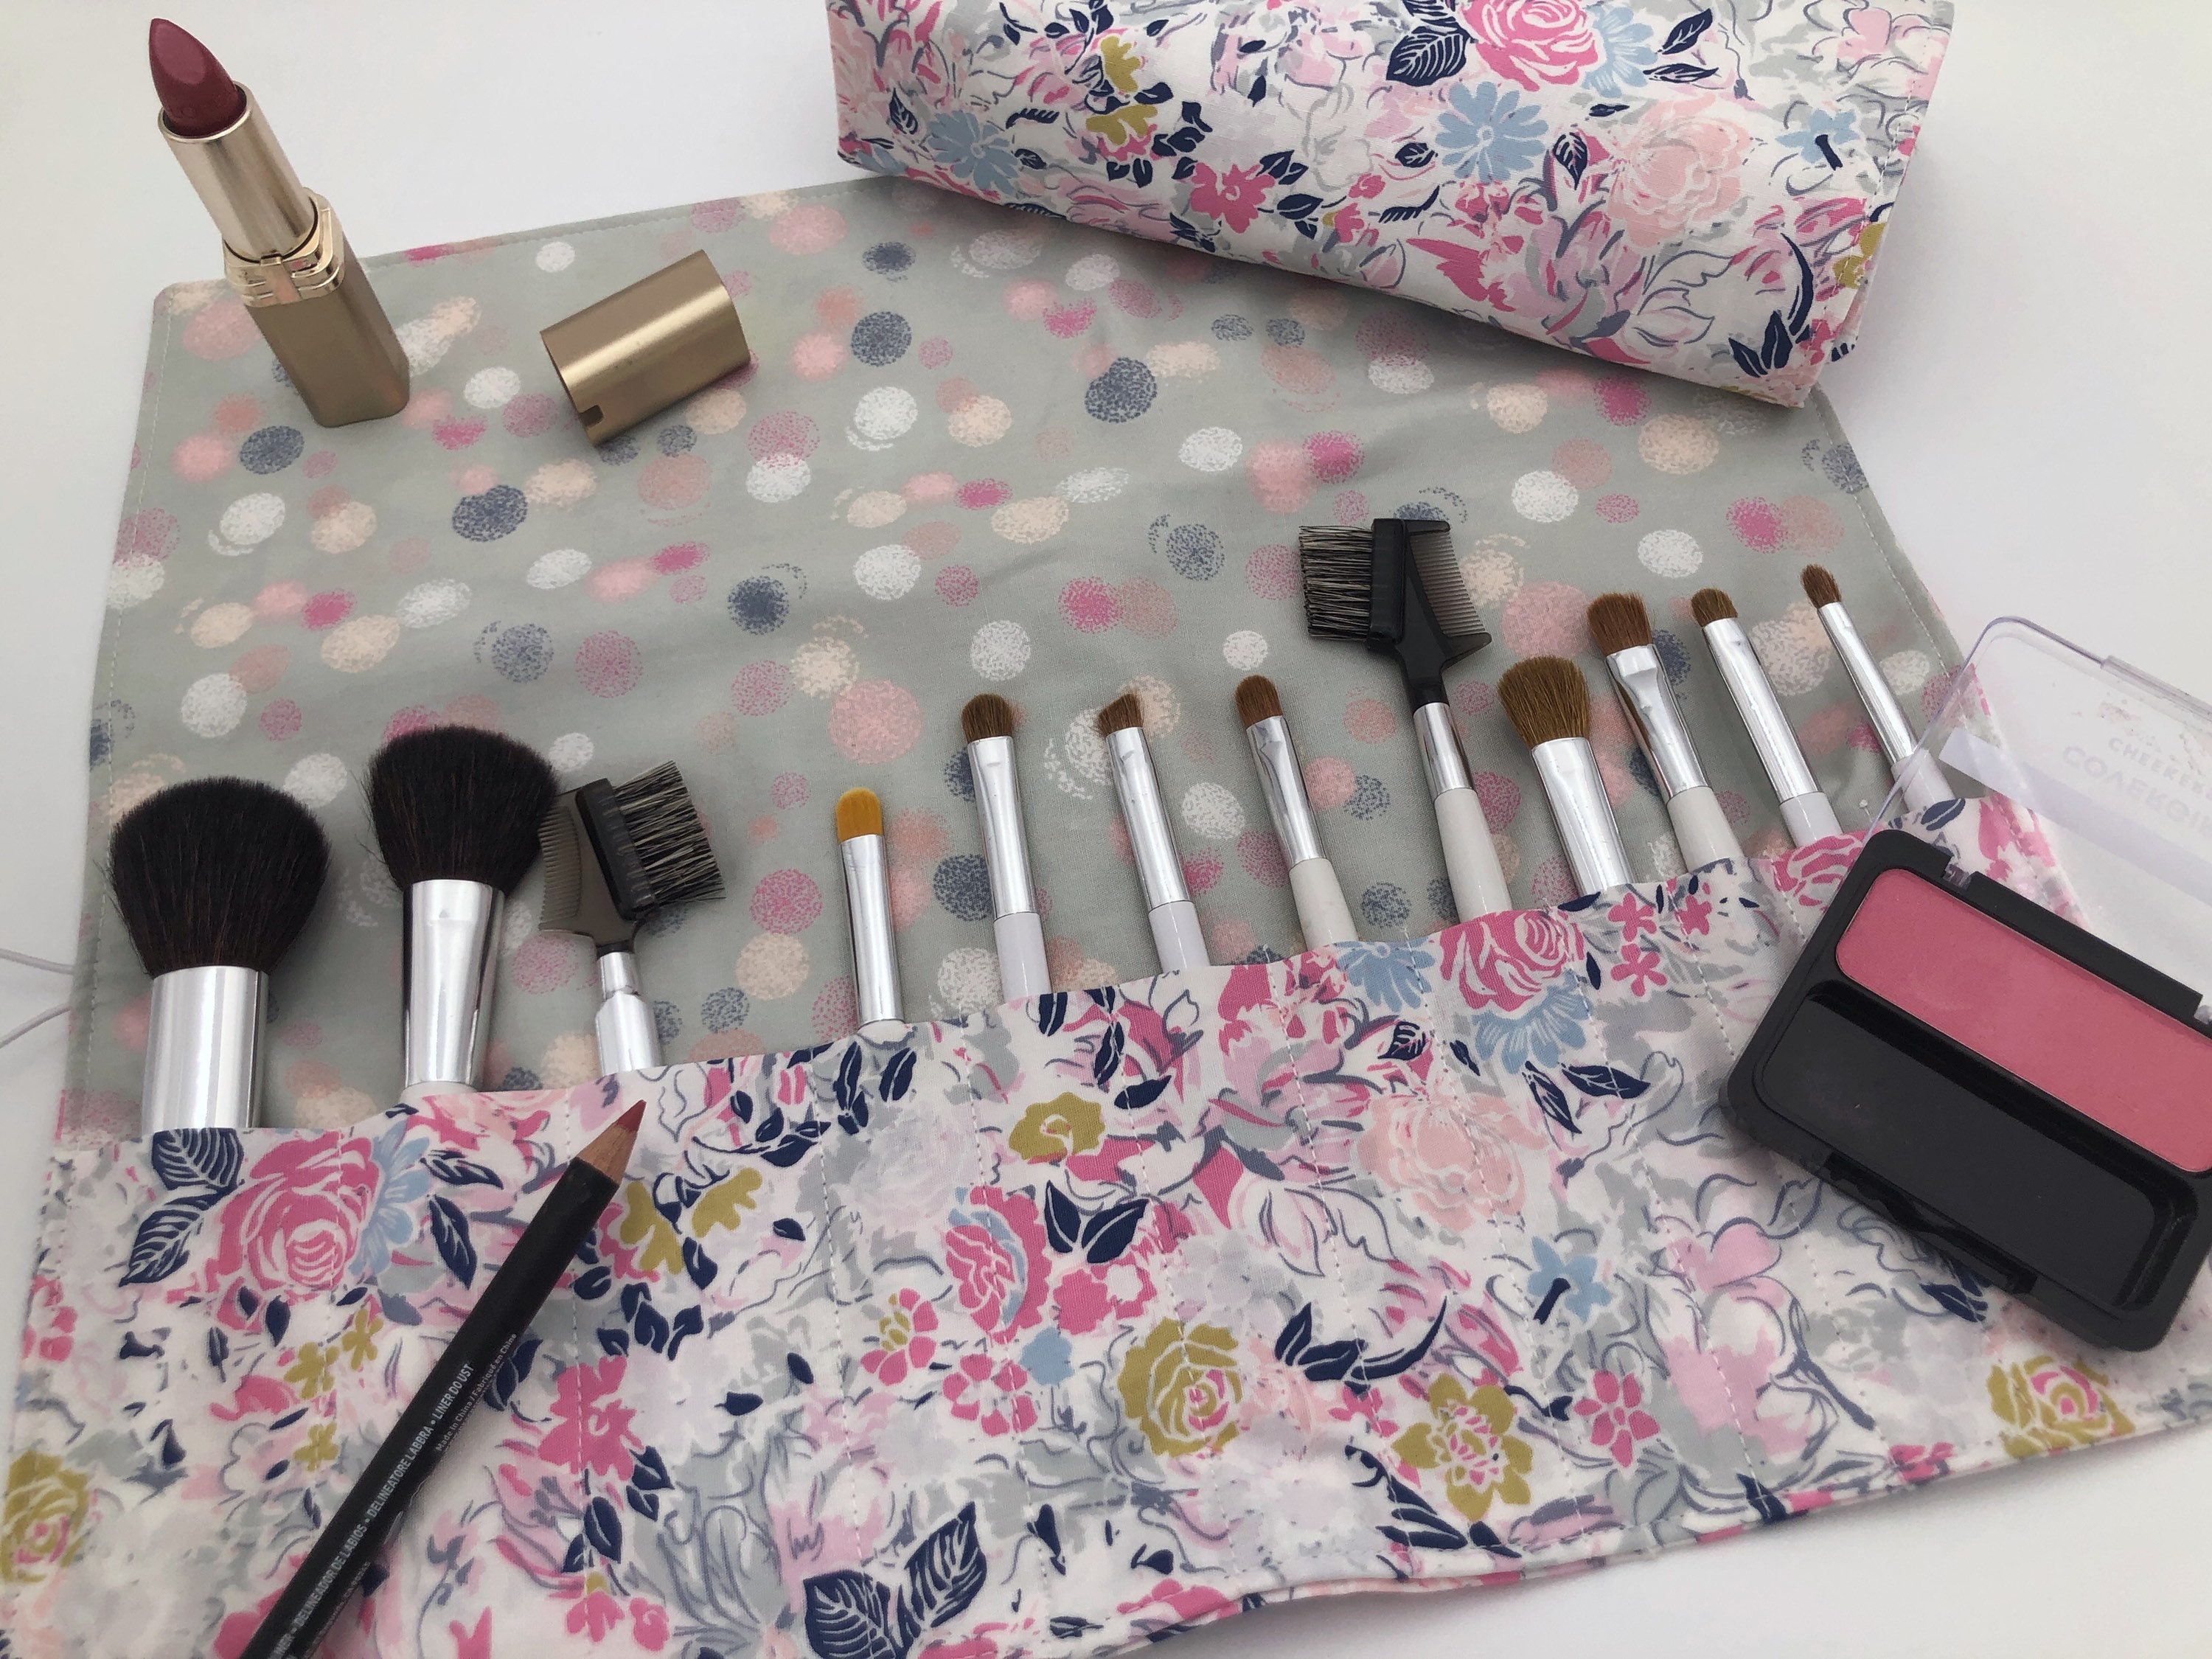 Makeup Brush Roll  Travel Organizer, Makeup Brush Case, Holder, pink cactus